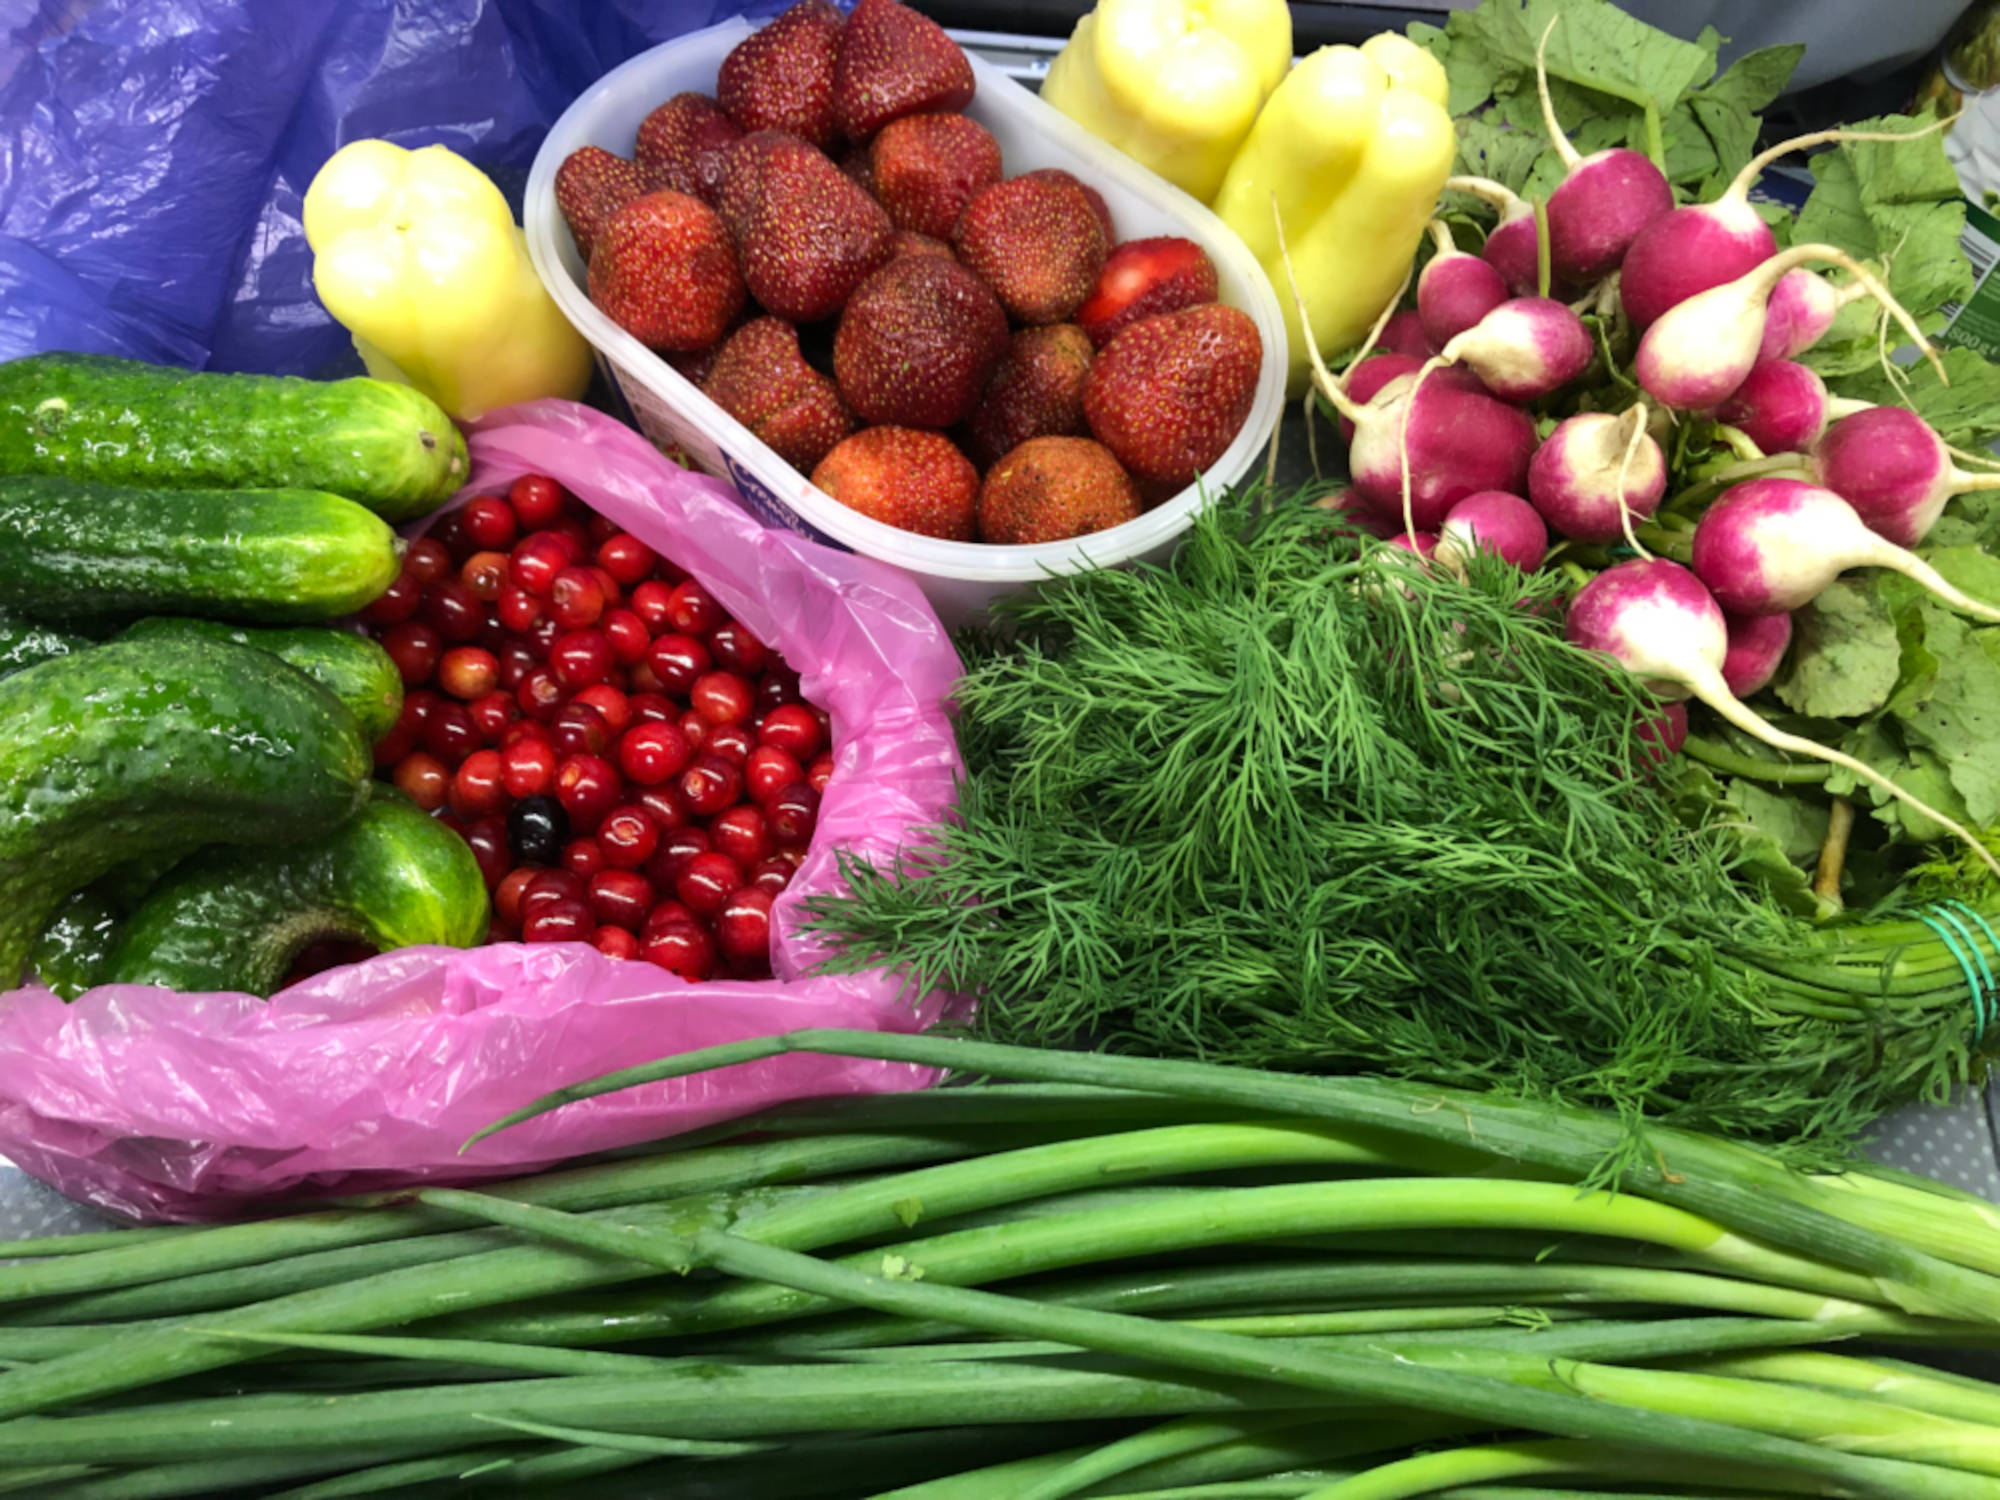 Obst und Gemüse vom Markt in der Ukraine